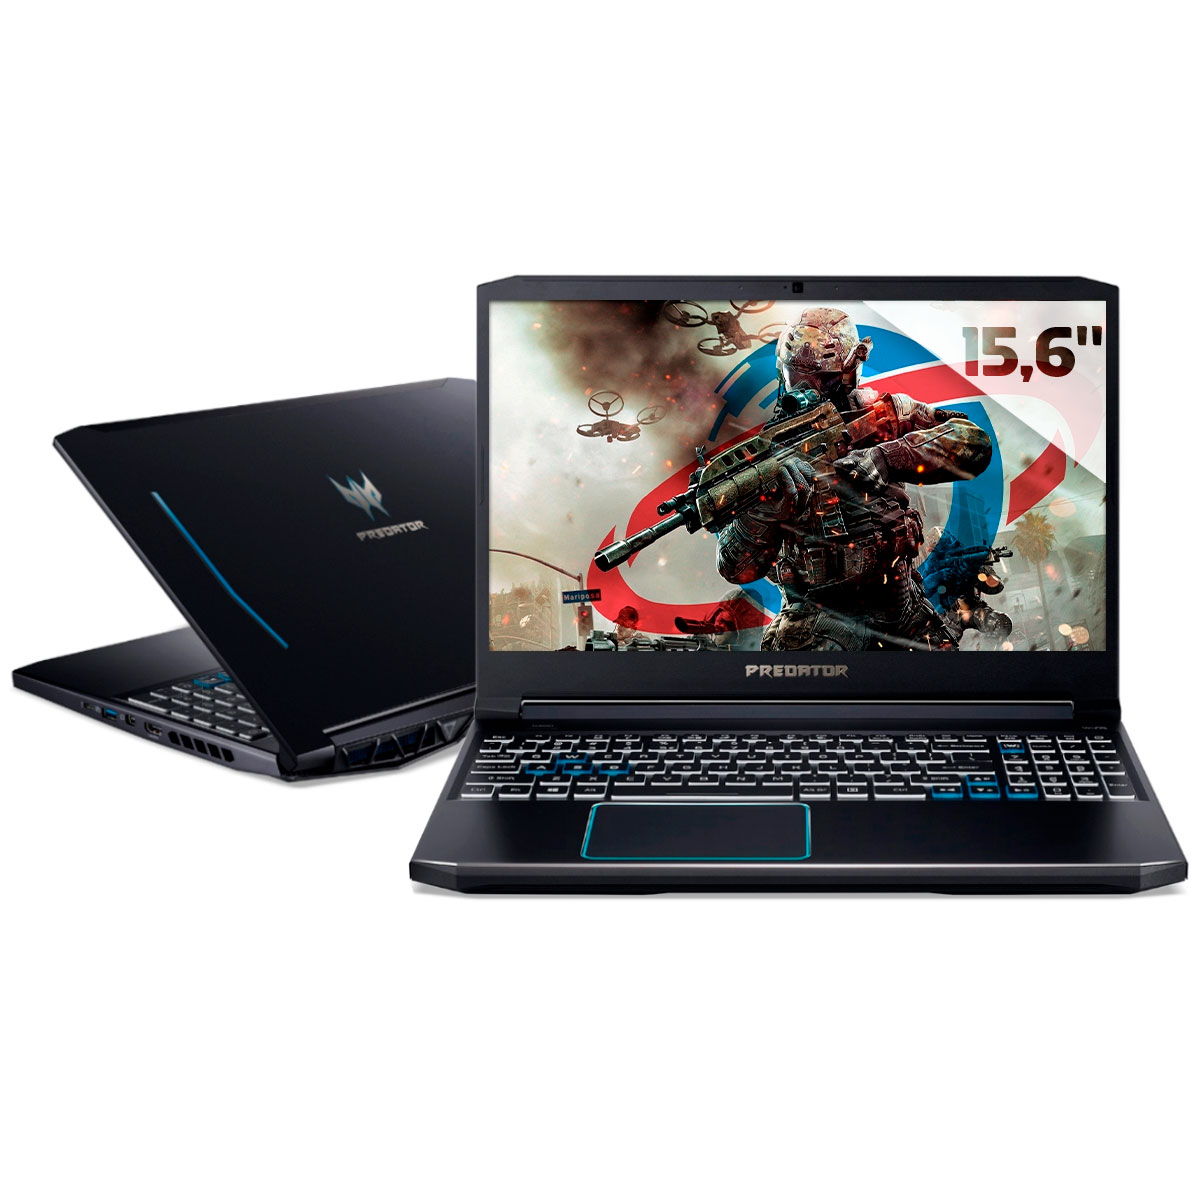 Notebook Acer Gaming Predator Helios 300 - Intel i7 10750H, RAM 32GB, SSD 512GB + HD 2TB, GeForce RTX 2070, Tela 15.6